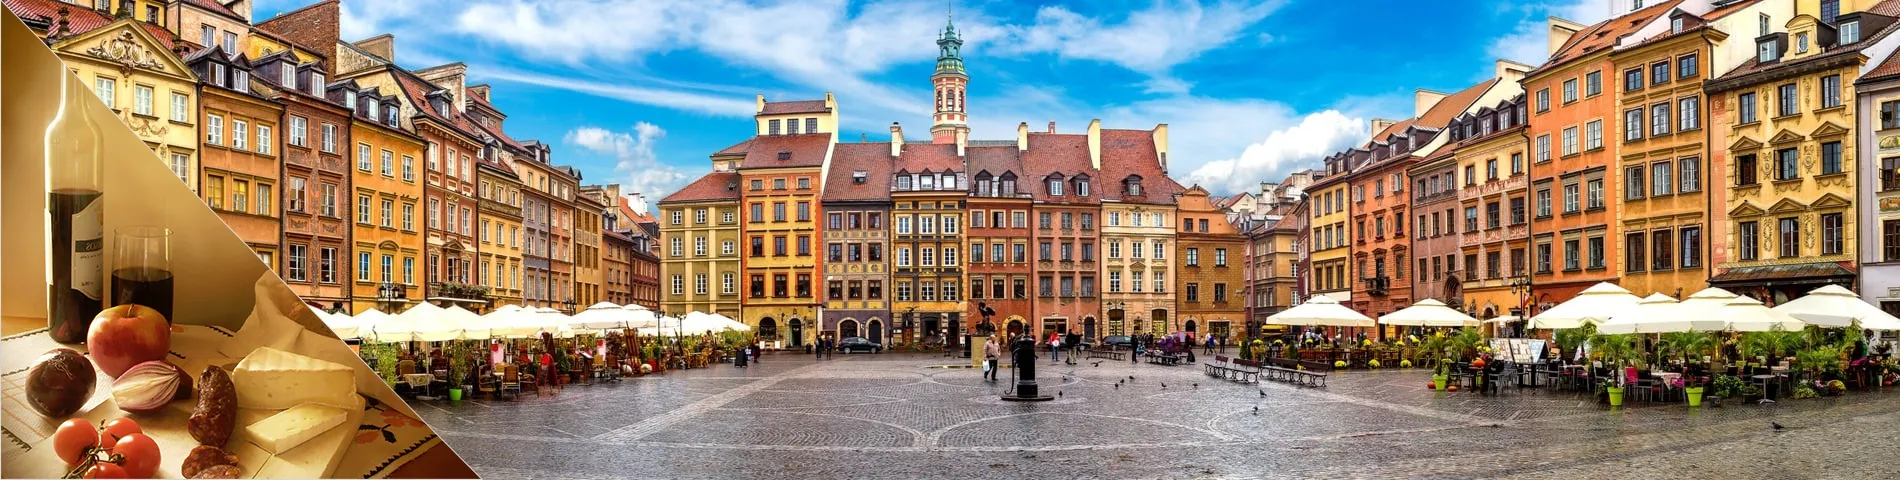 Varsóvia - Polonês & Cultura 